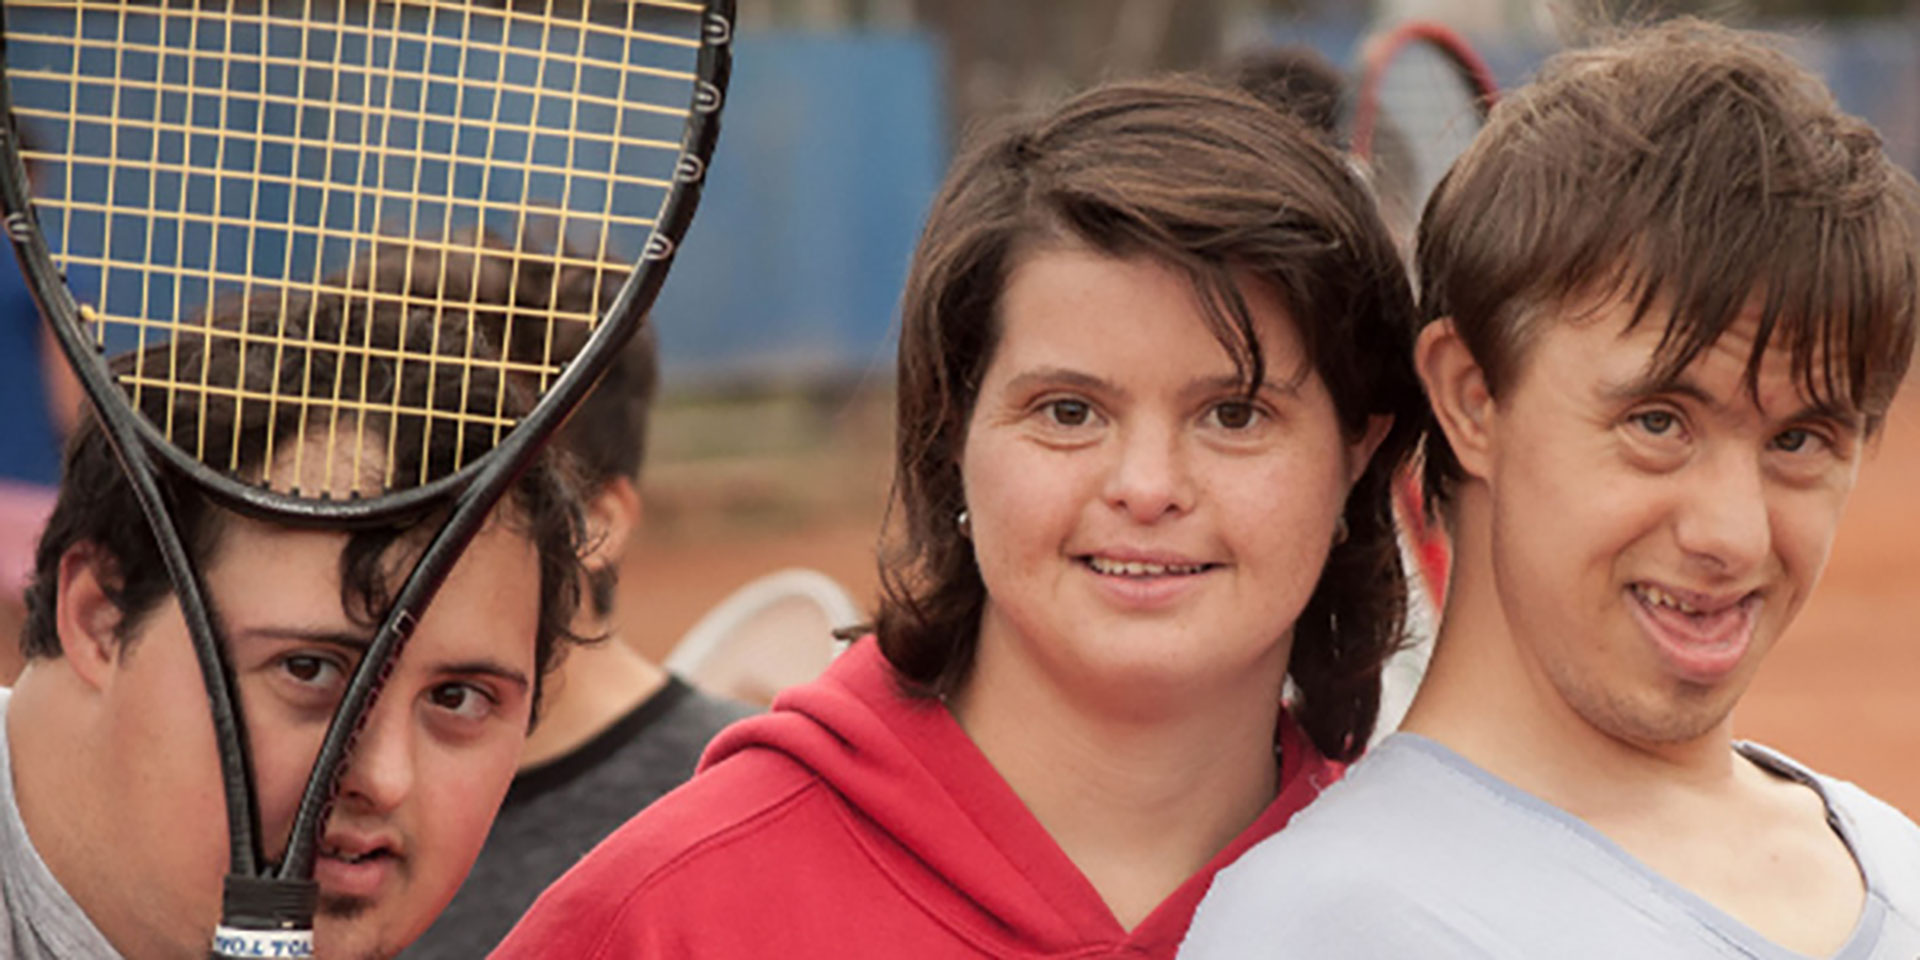 El tenis, al igual que el fútbol, se desarrolla en las canchas del club cordobés General Paz Juniors, que cede los espacios gratuitamente. (Imagen: gentileza Fundación Empate)
